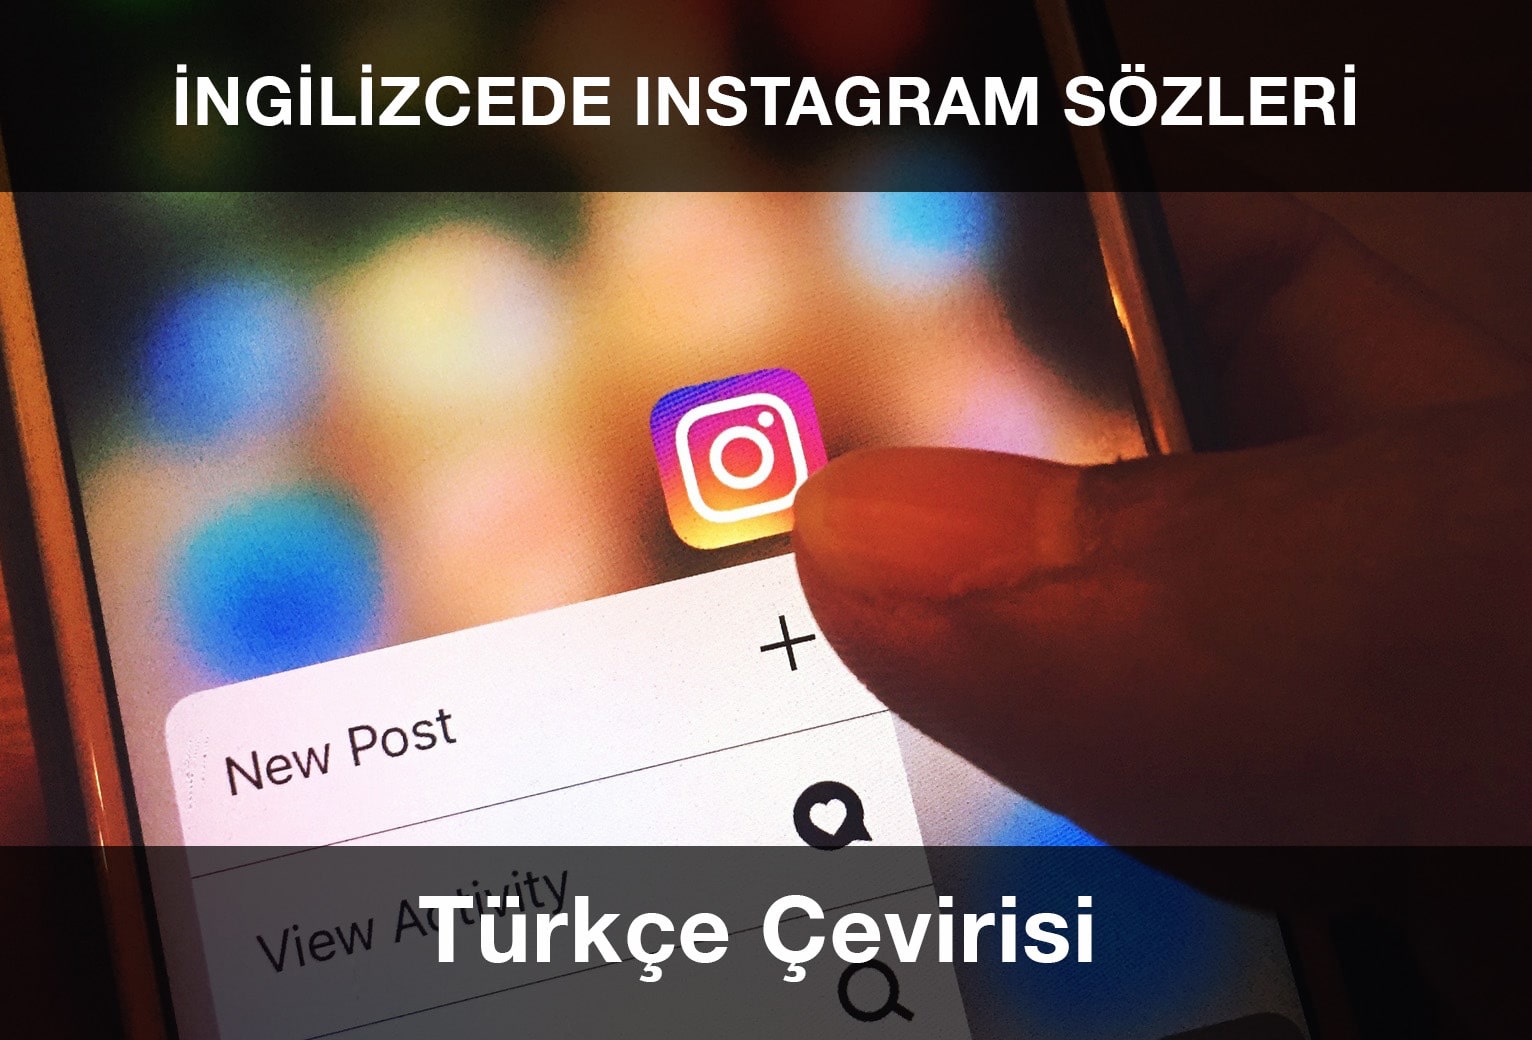 İngilizce Instagram Sözleri ve Türkçe Anlamları